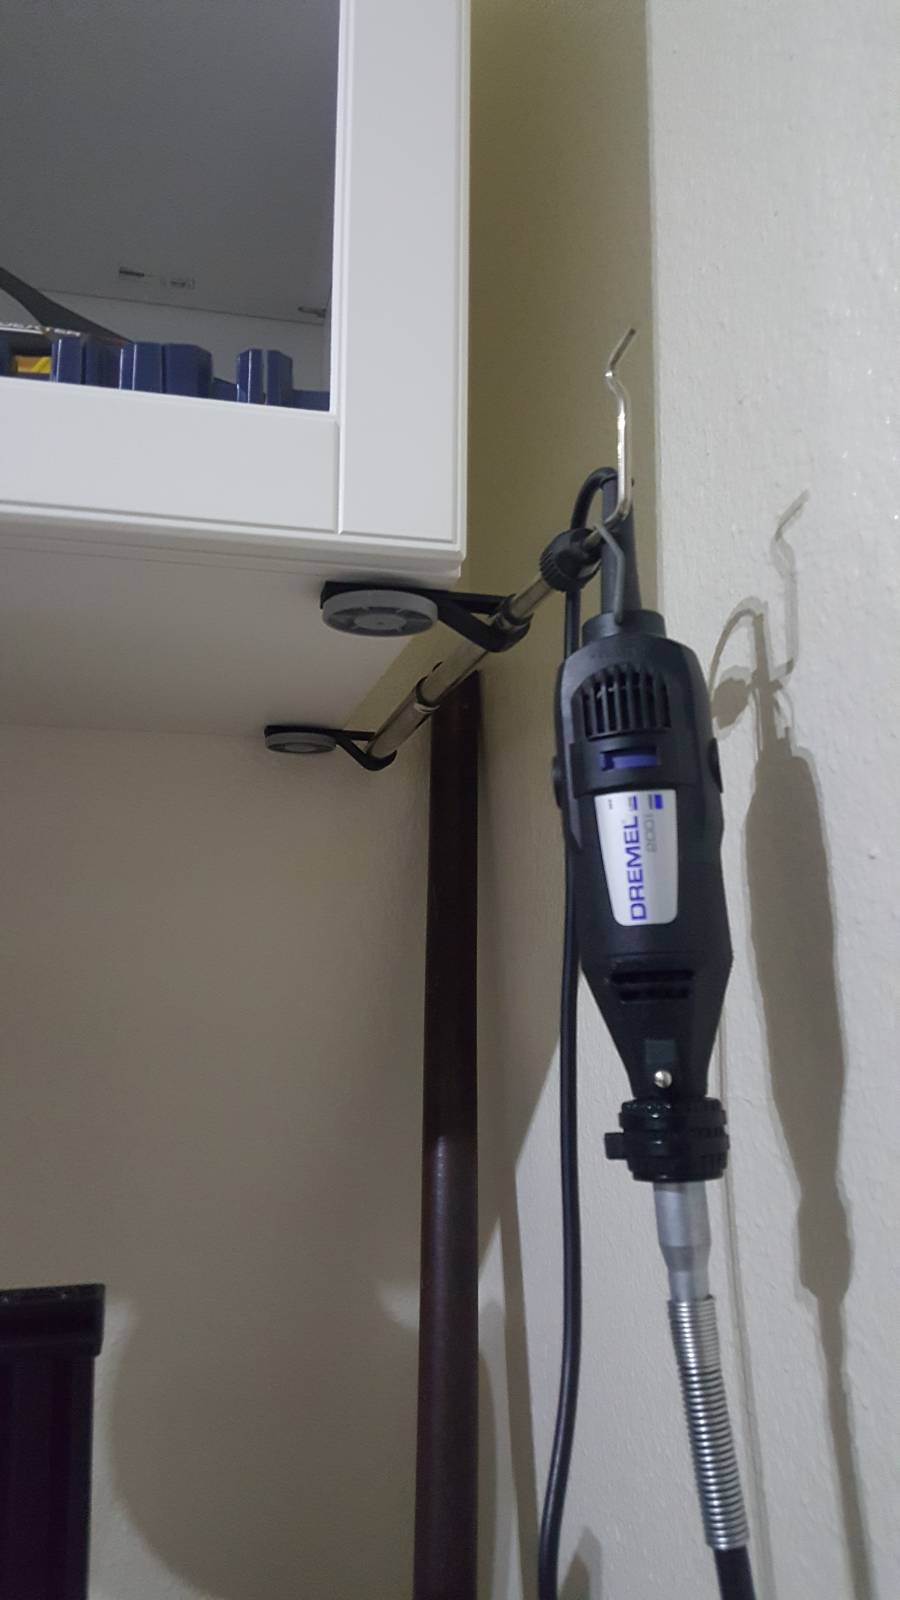 Dremel support rod adapter for IKEA besta cupboards